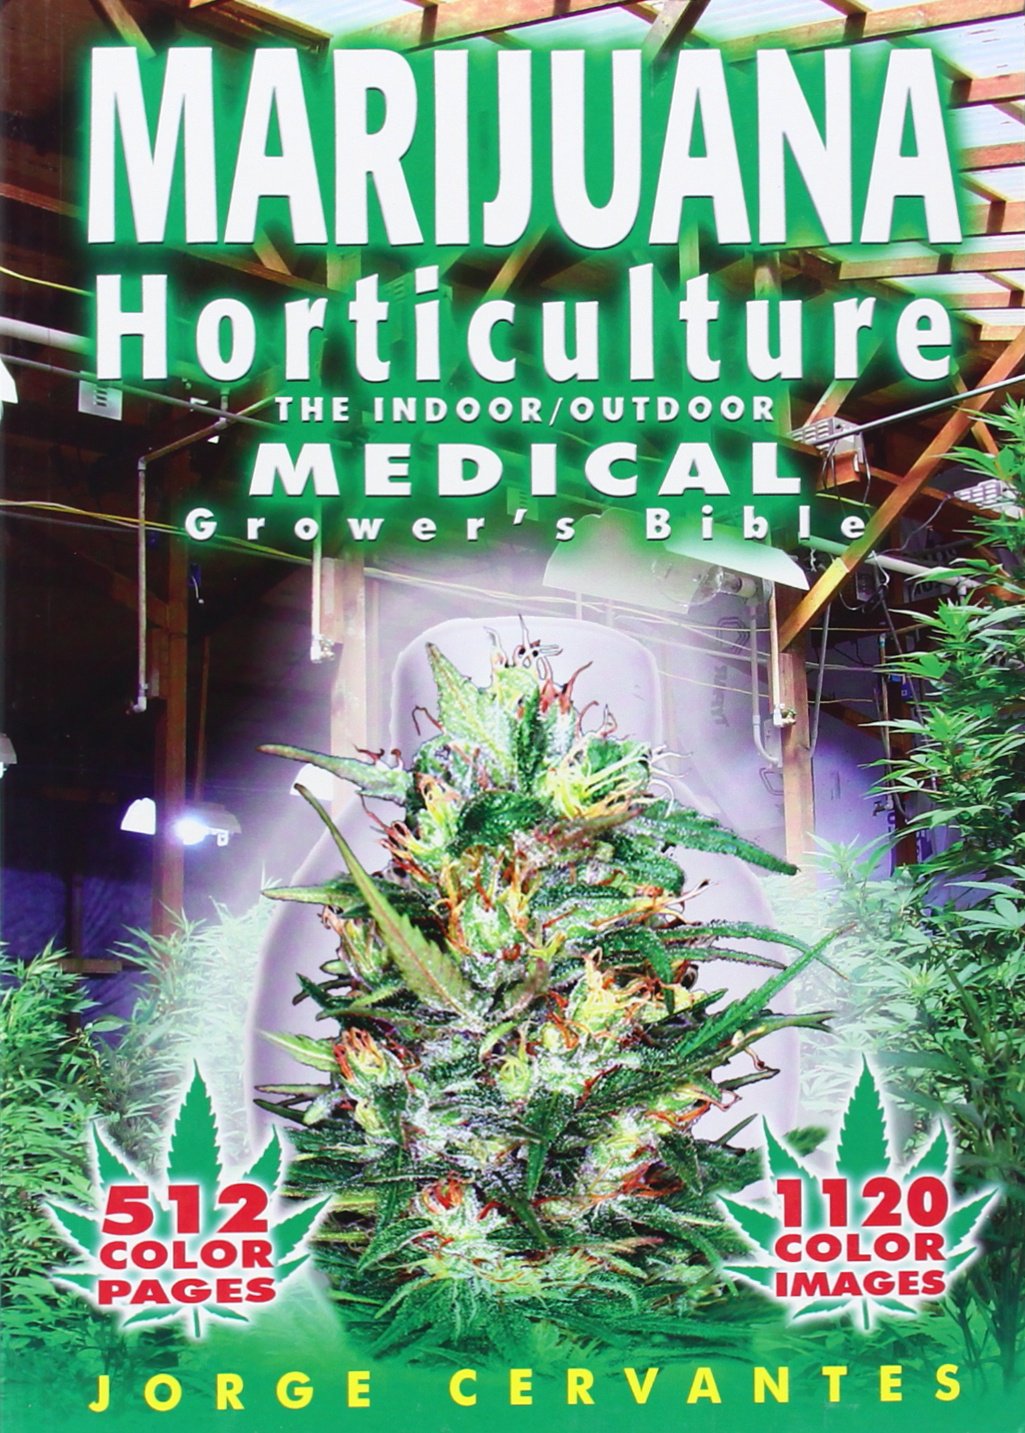 Marijuana Horticulture Medical Grow Bible